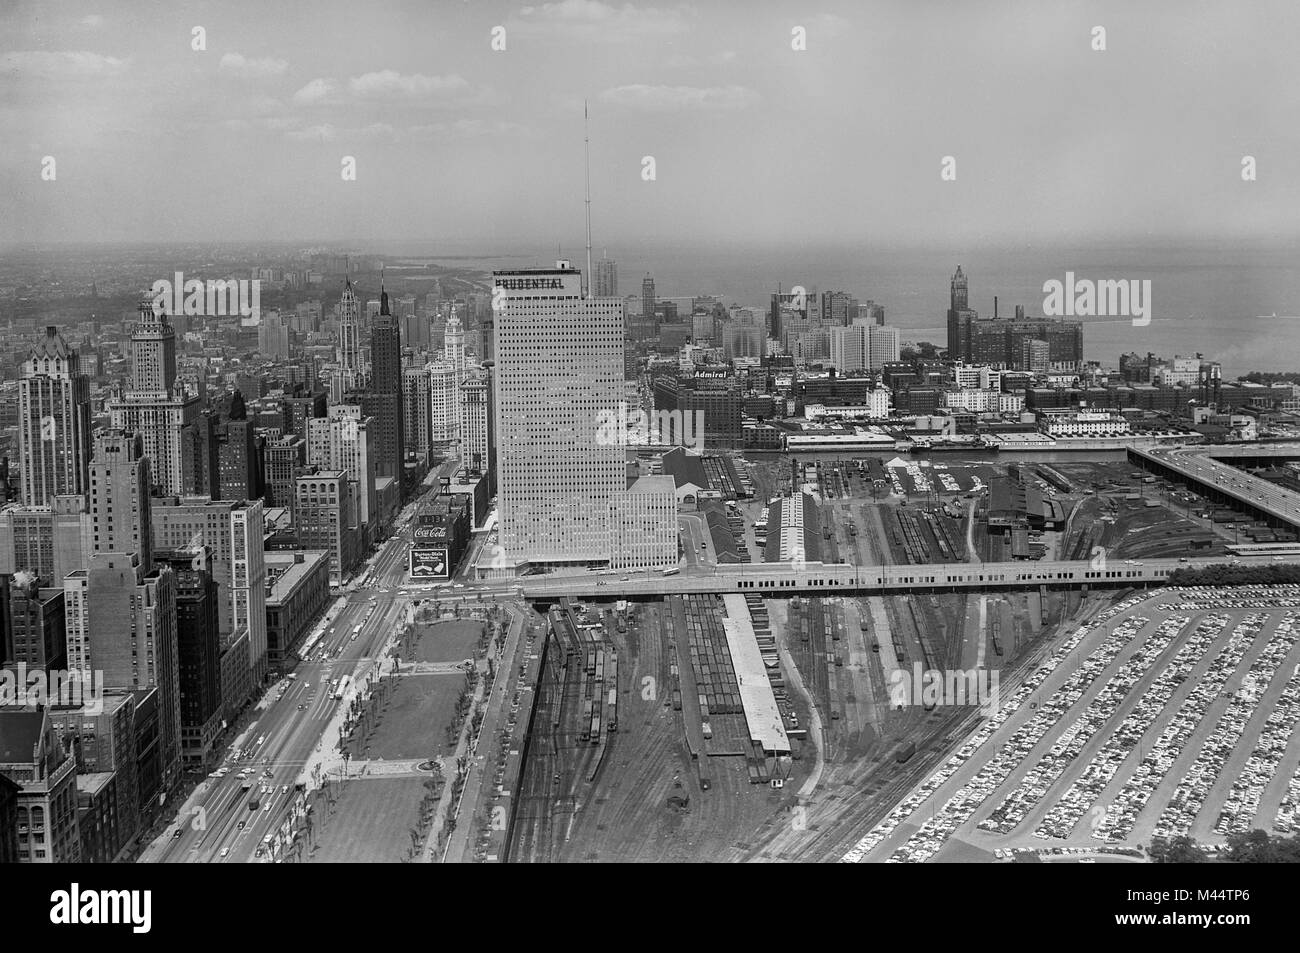 Le bâtiment nouvellement construit Prudential augmente comme le premier gratte-ciel de Chicago à l'est de Michigan Avenue et au sud de la rivière Chicago, ca. 1958. Banque D'Images